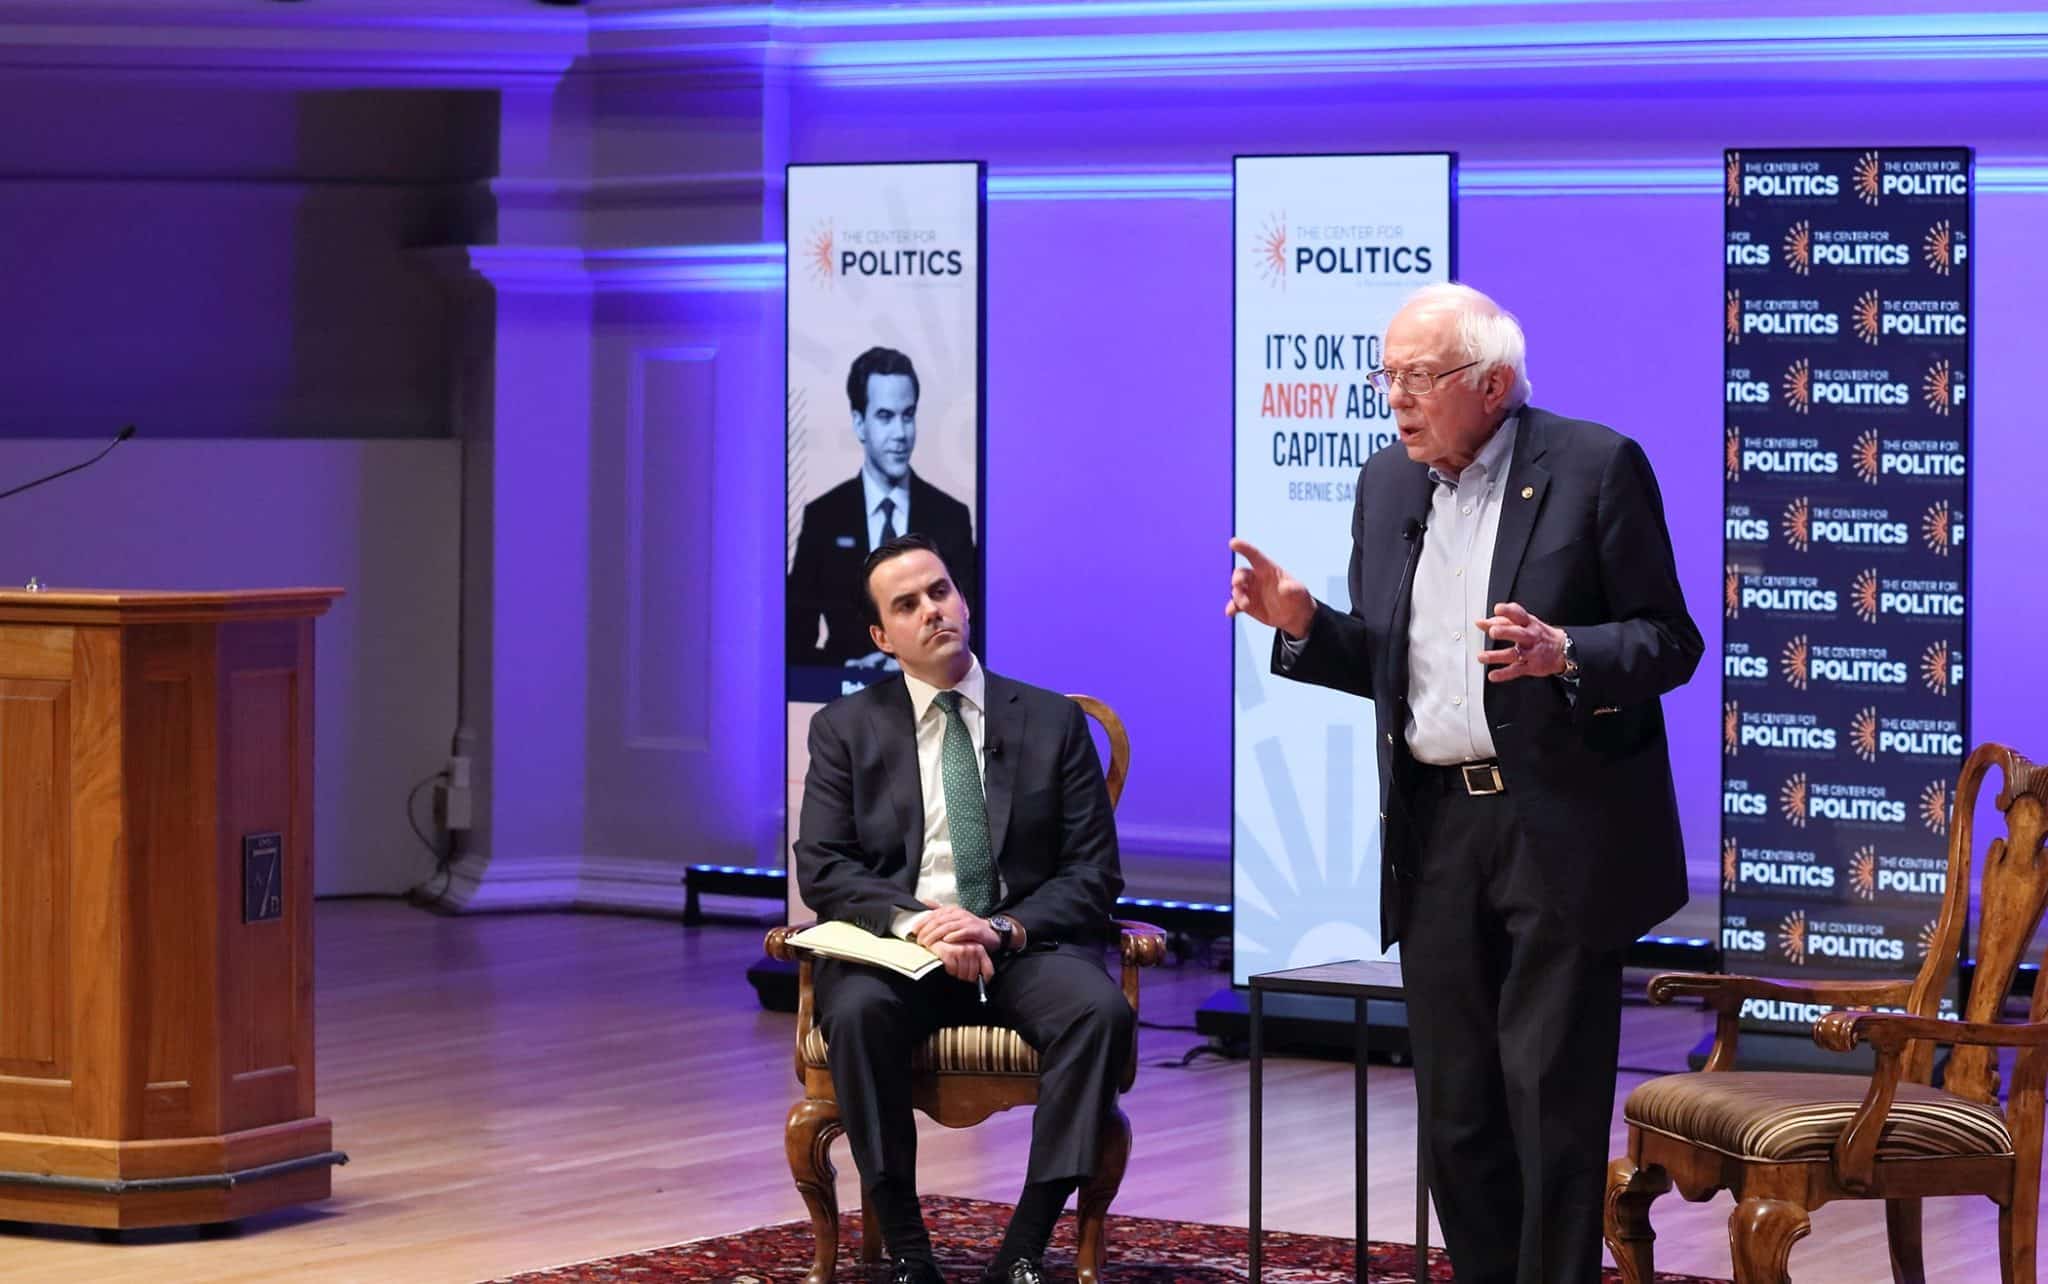 Bernie Sanders speaks at UVA's Center for Politics